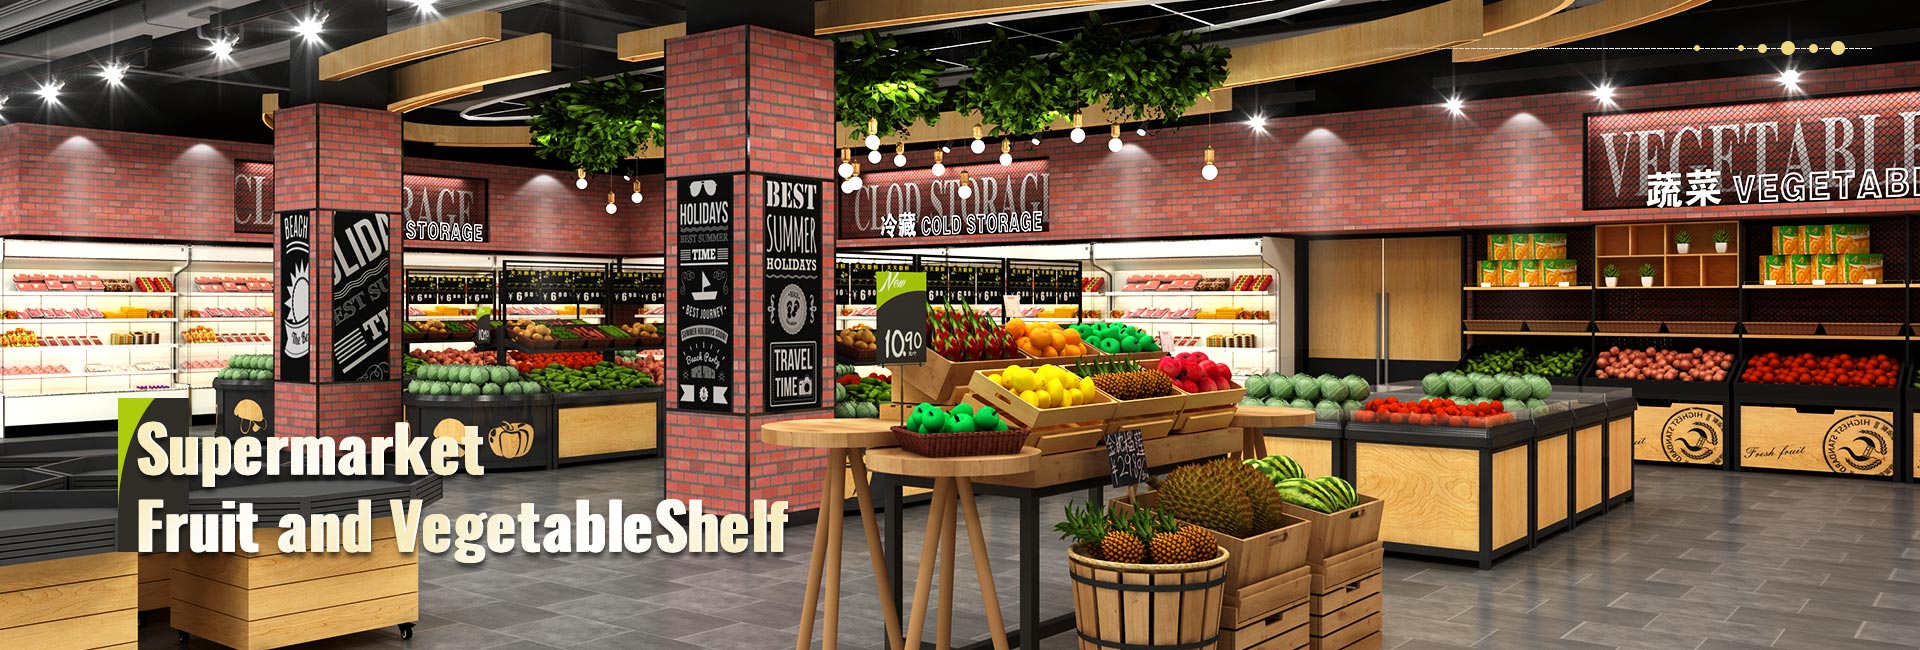 Supermarkt Obst und Gemüse Regal